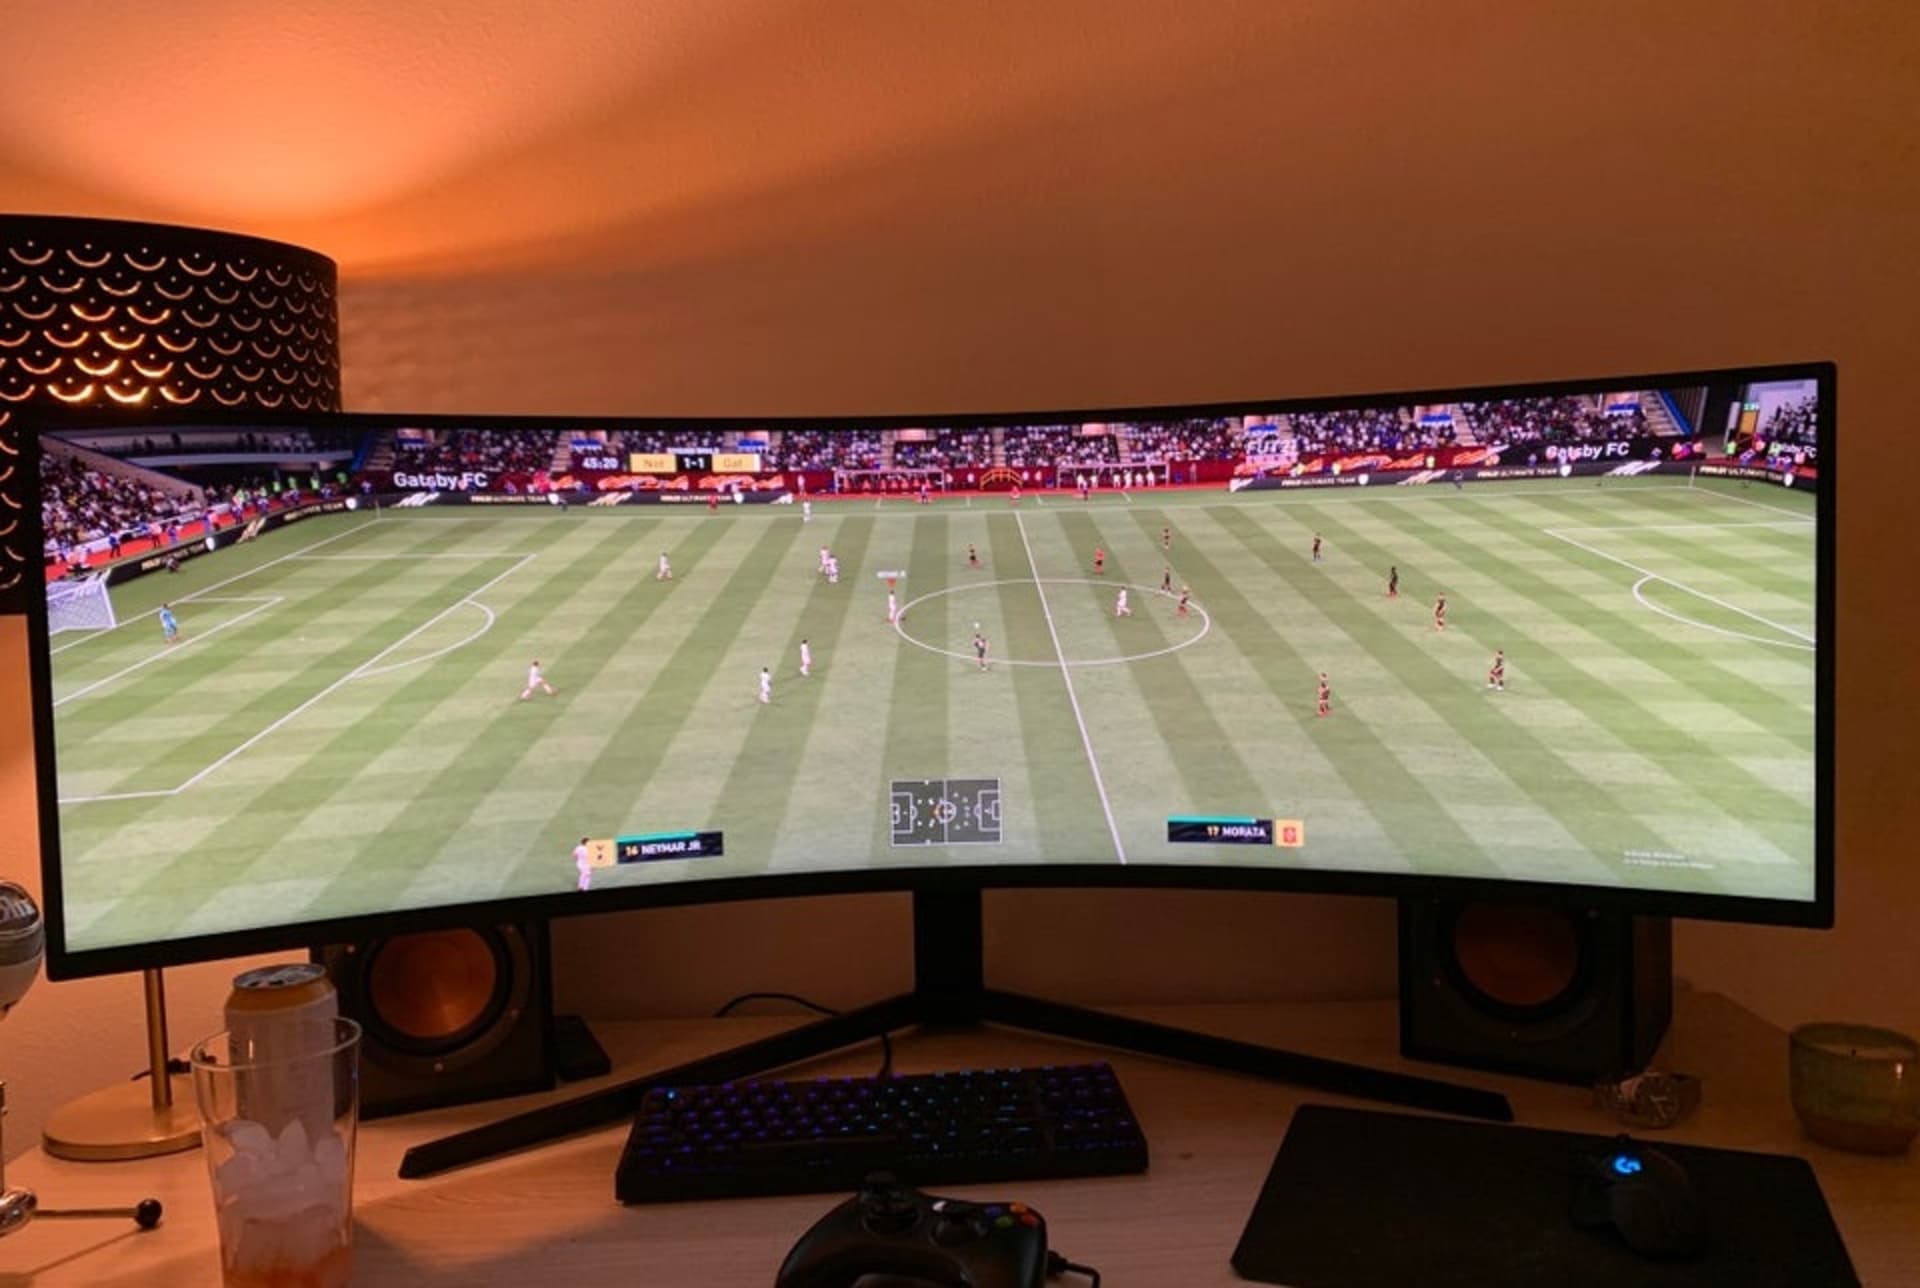 Hra FIFA se těší velké popularitě. Hraje ji i 19letý mladík ze Seattlu, který využívá neobvyklý monitor.